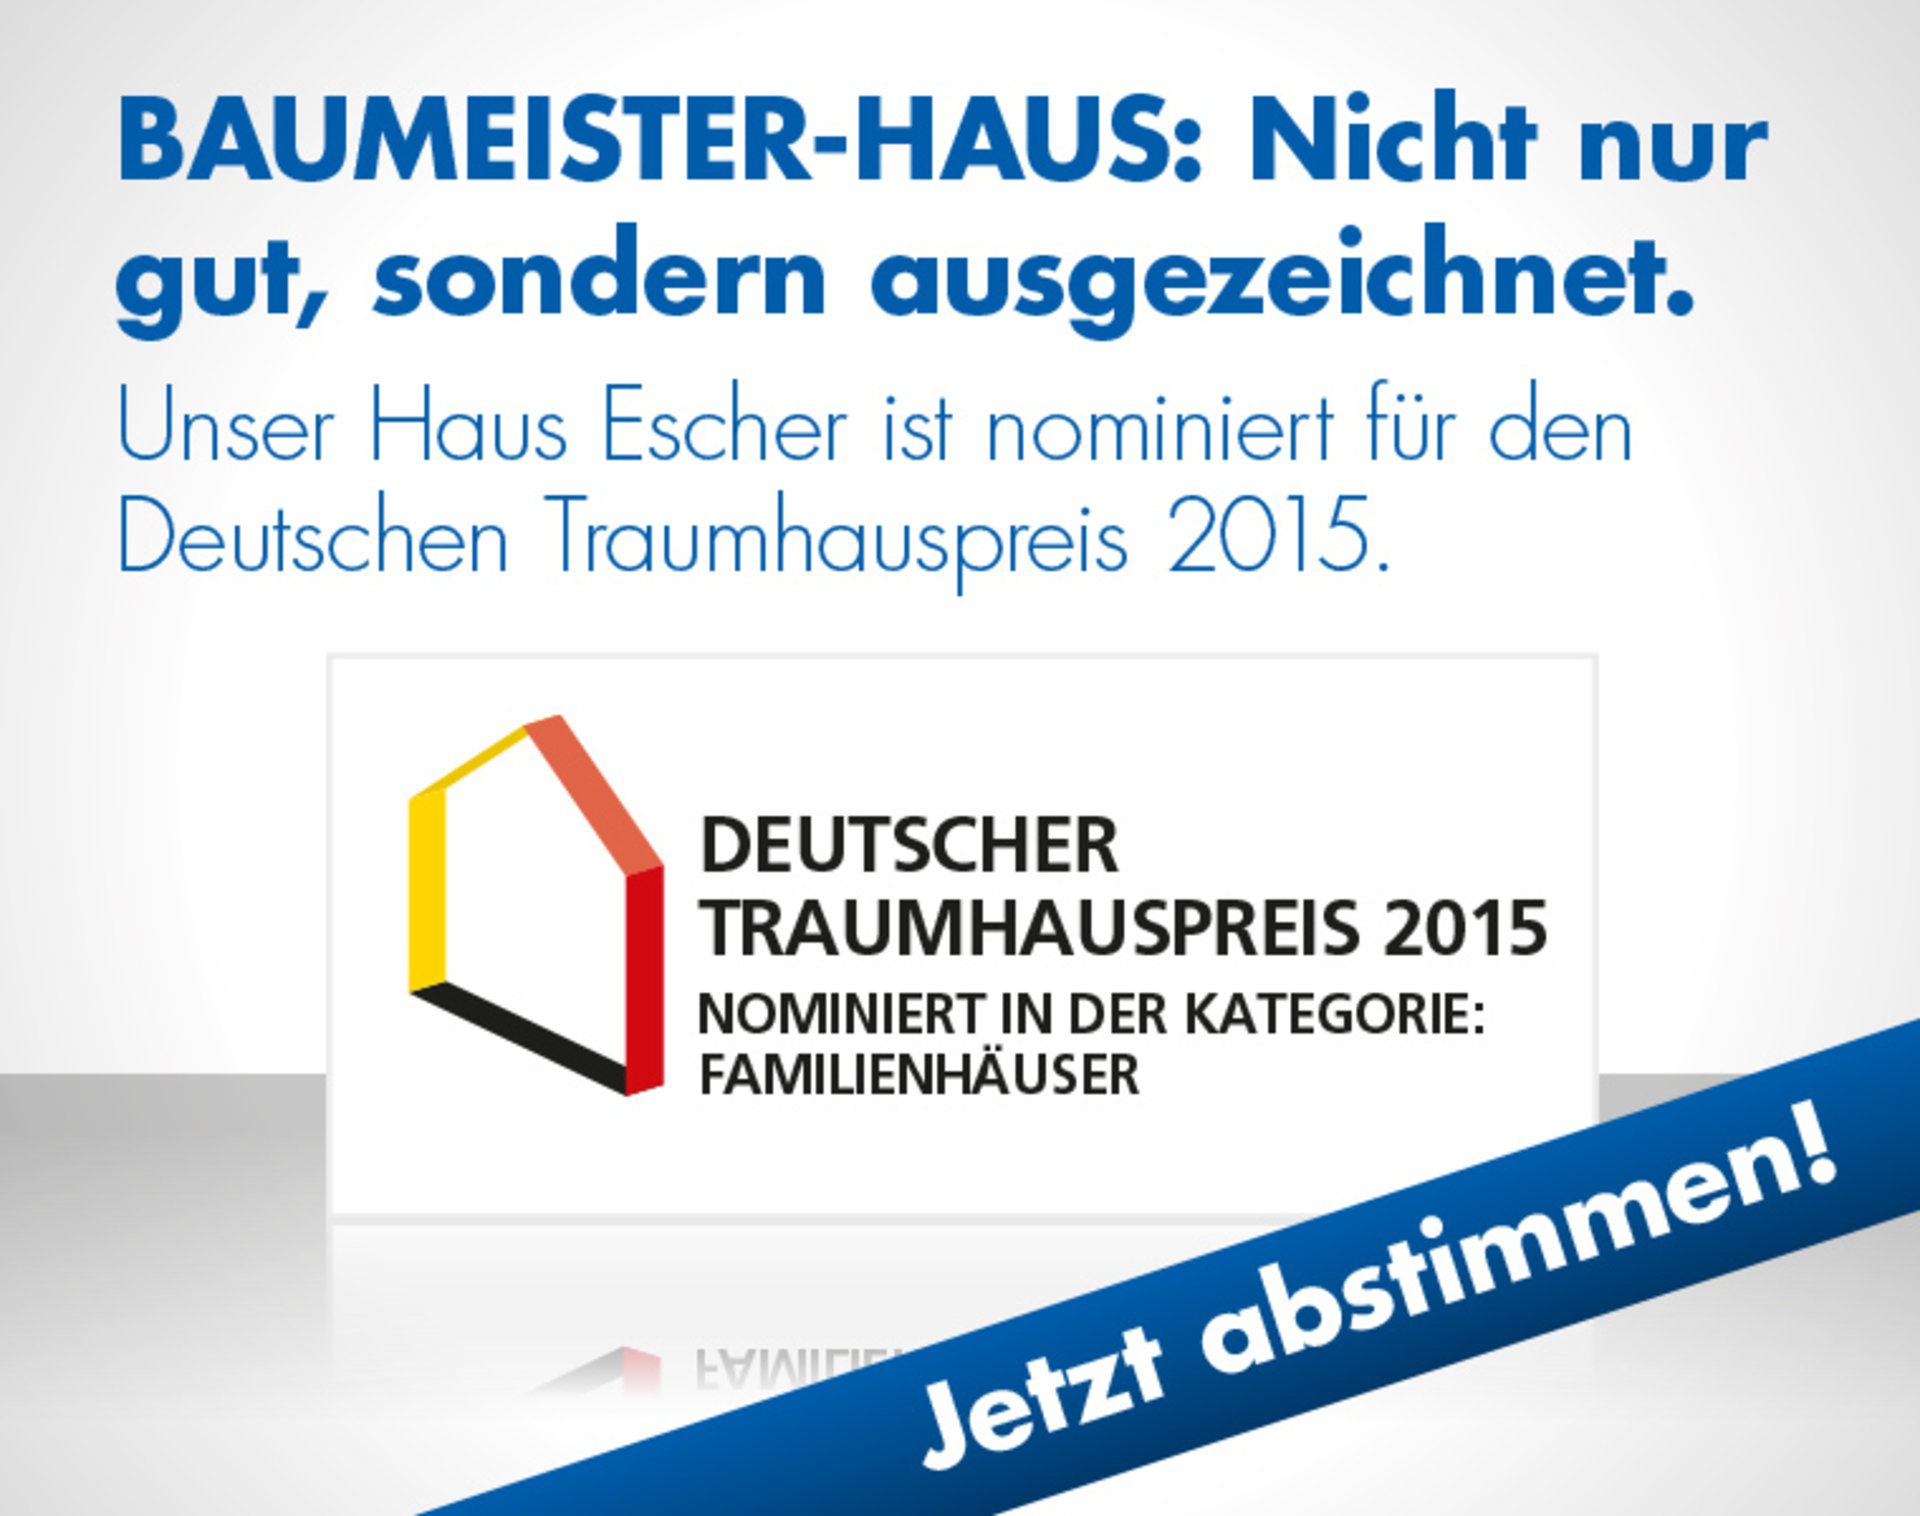 BAUMEISTER-HAUS ist nominiert für den Deutschen Traumhauspreis 2015.